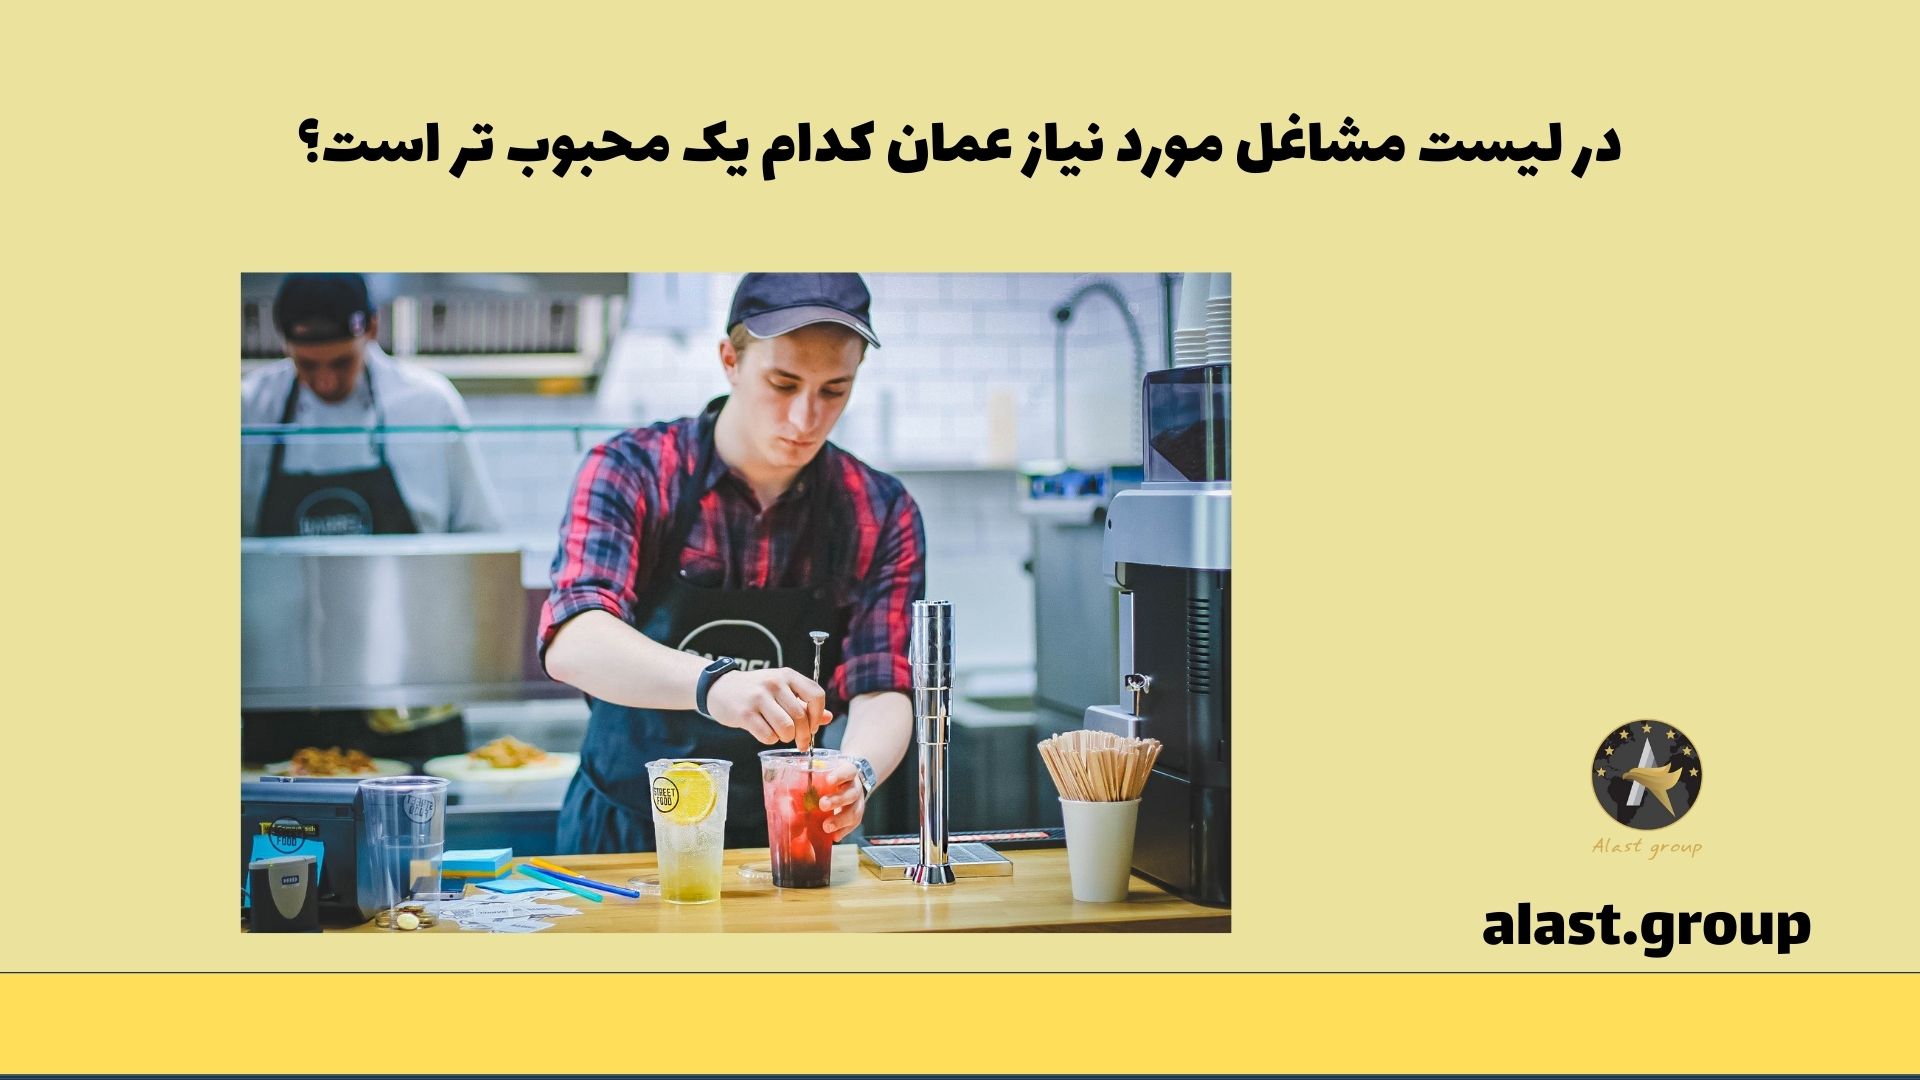 در لیست مشاغل مورد نیاز عمان، کدام یک محبوب تر است؟